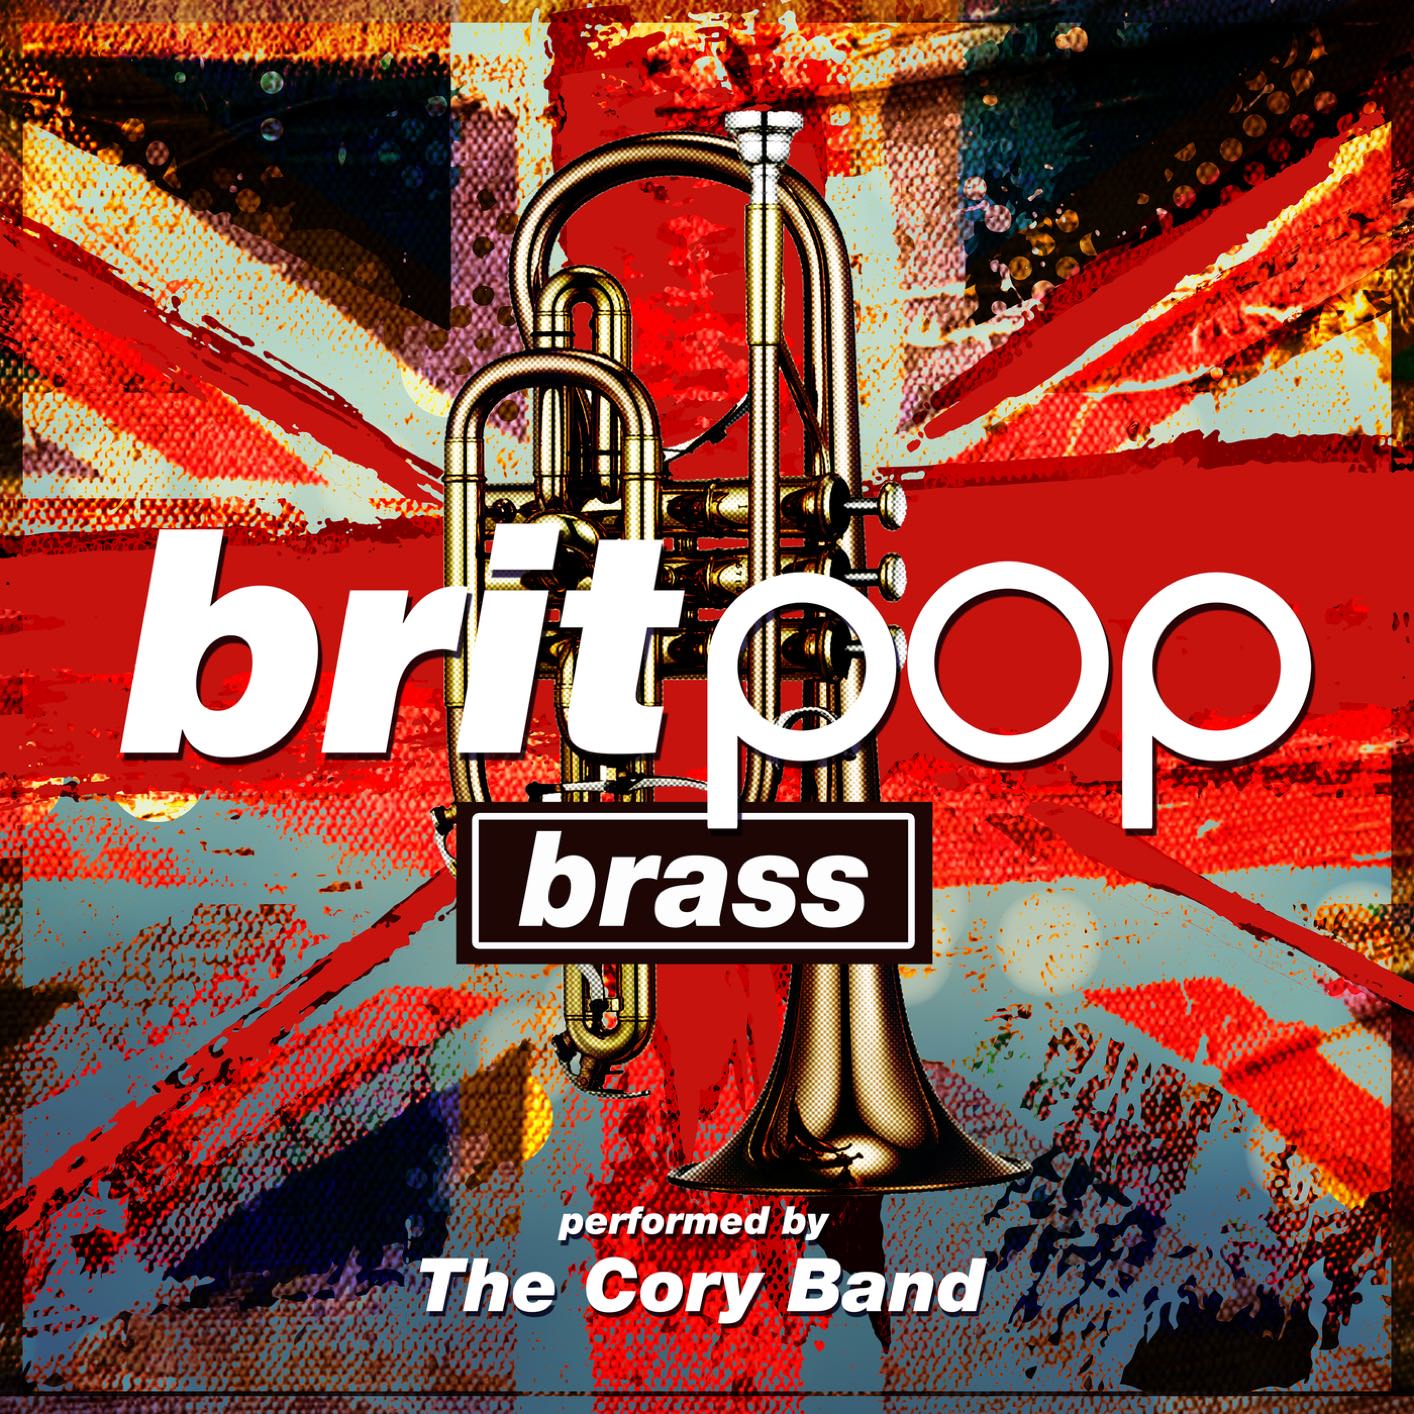 The Cory Band – Britpop Brass (2018) [FLAC 24bit/96kHz]